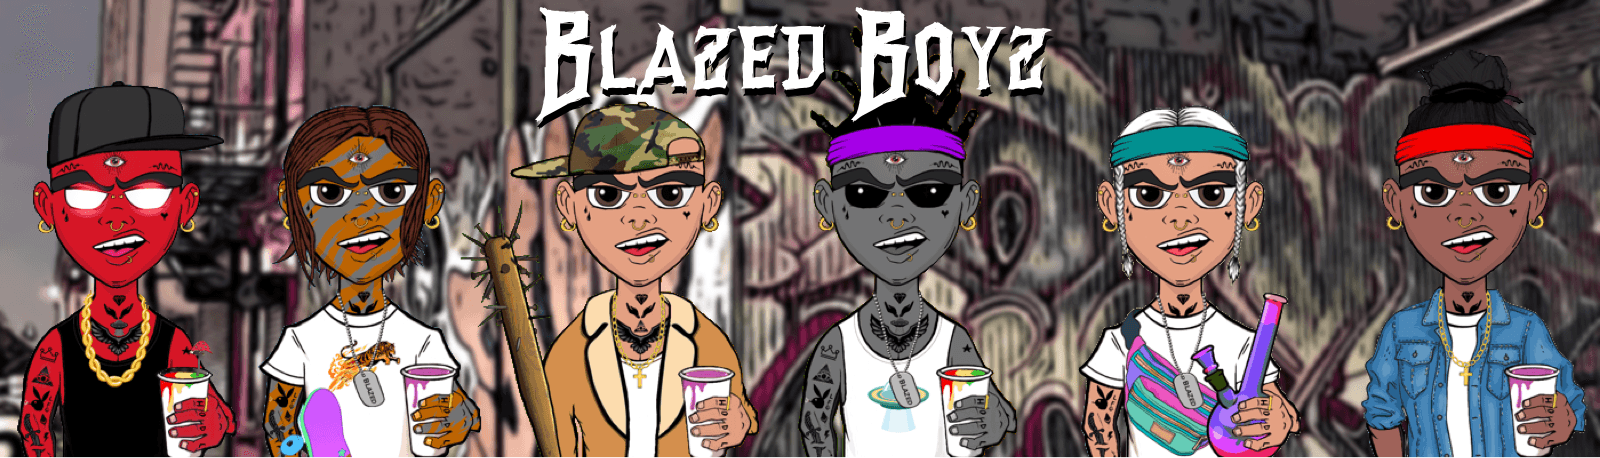 Blazed Boyz